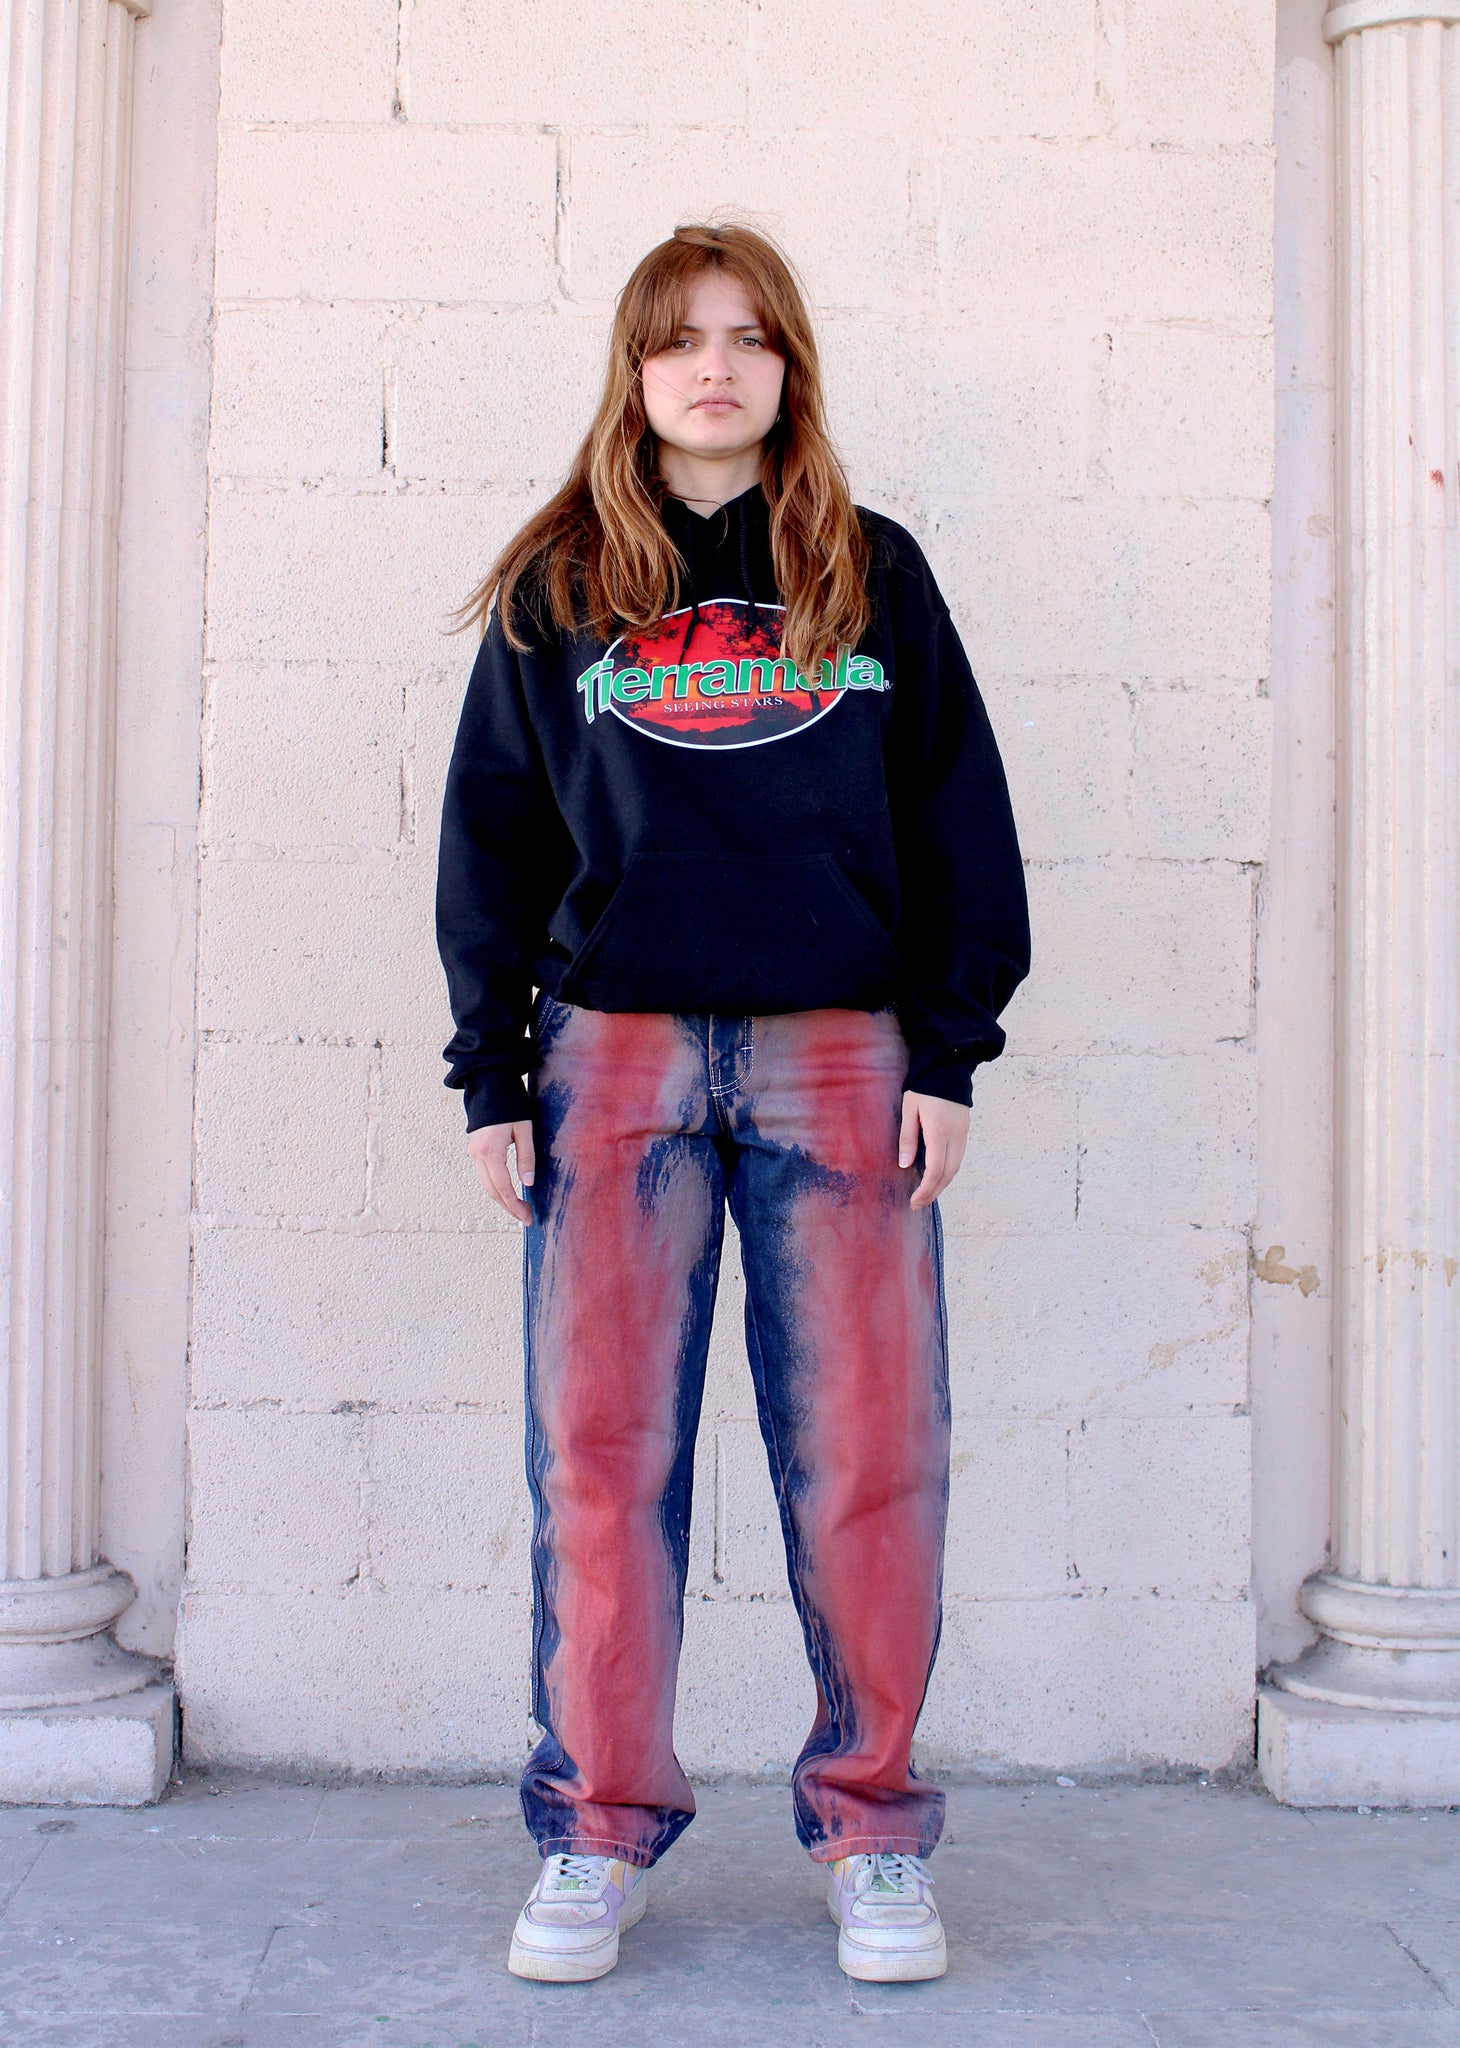 Edición limitada - brown-red dye jeans 06